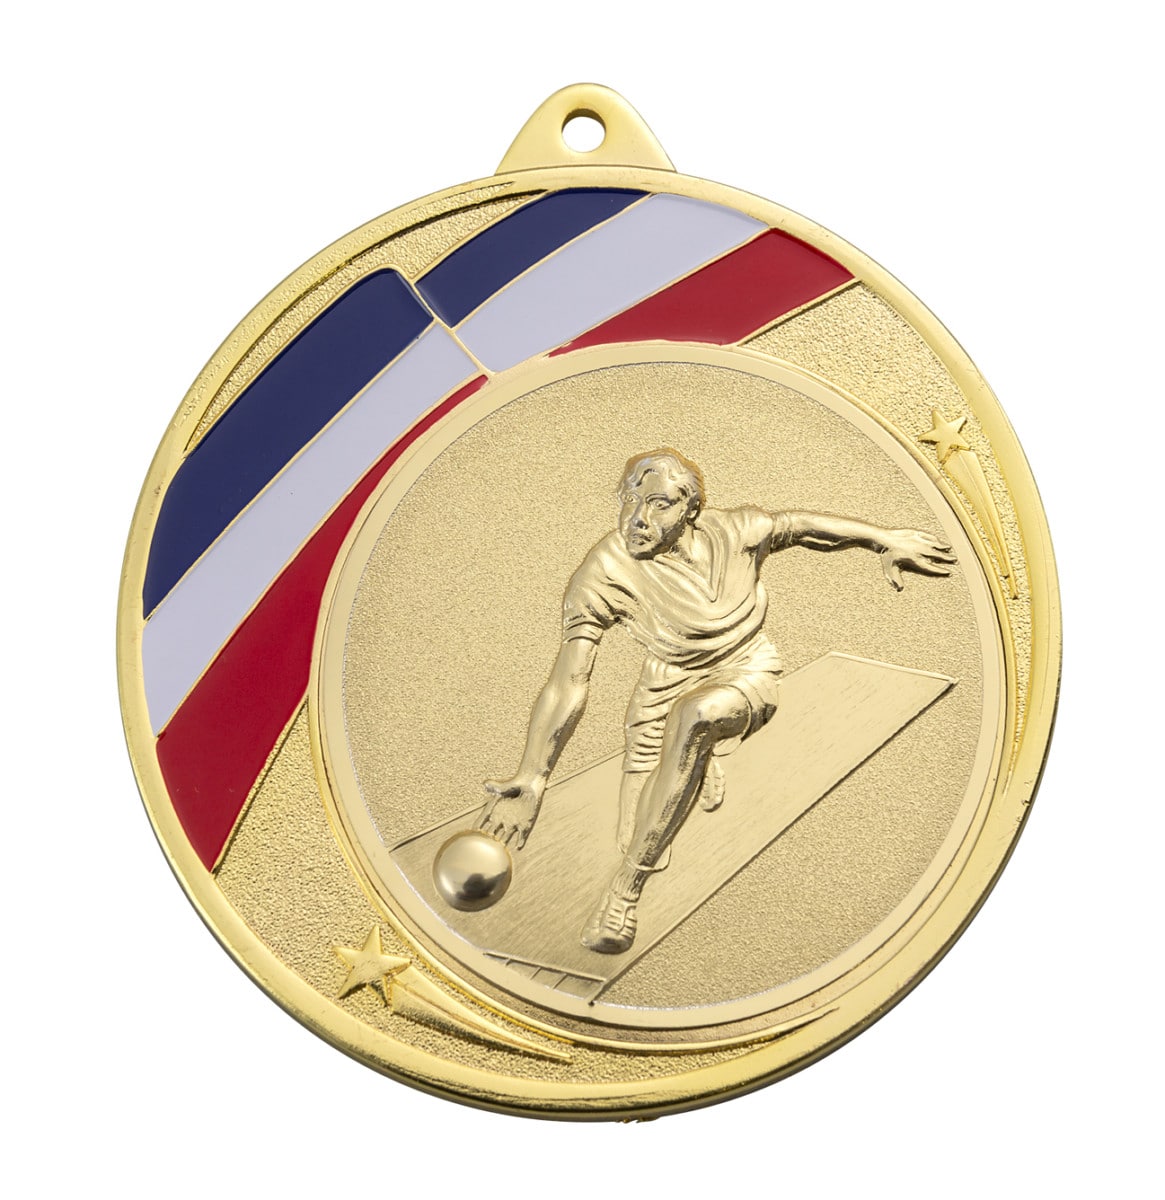 Médaille d'honneur du prix Super Quality Medals avec ruban - Chine Médaille  du sport et Médaille du prix prix